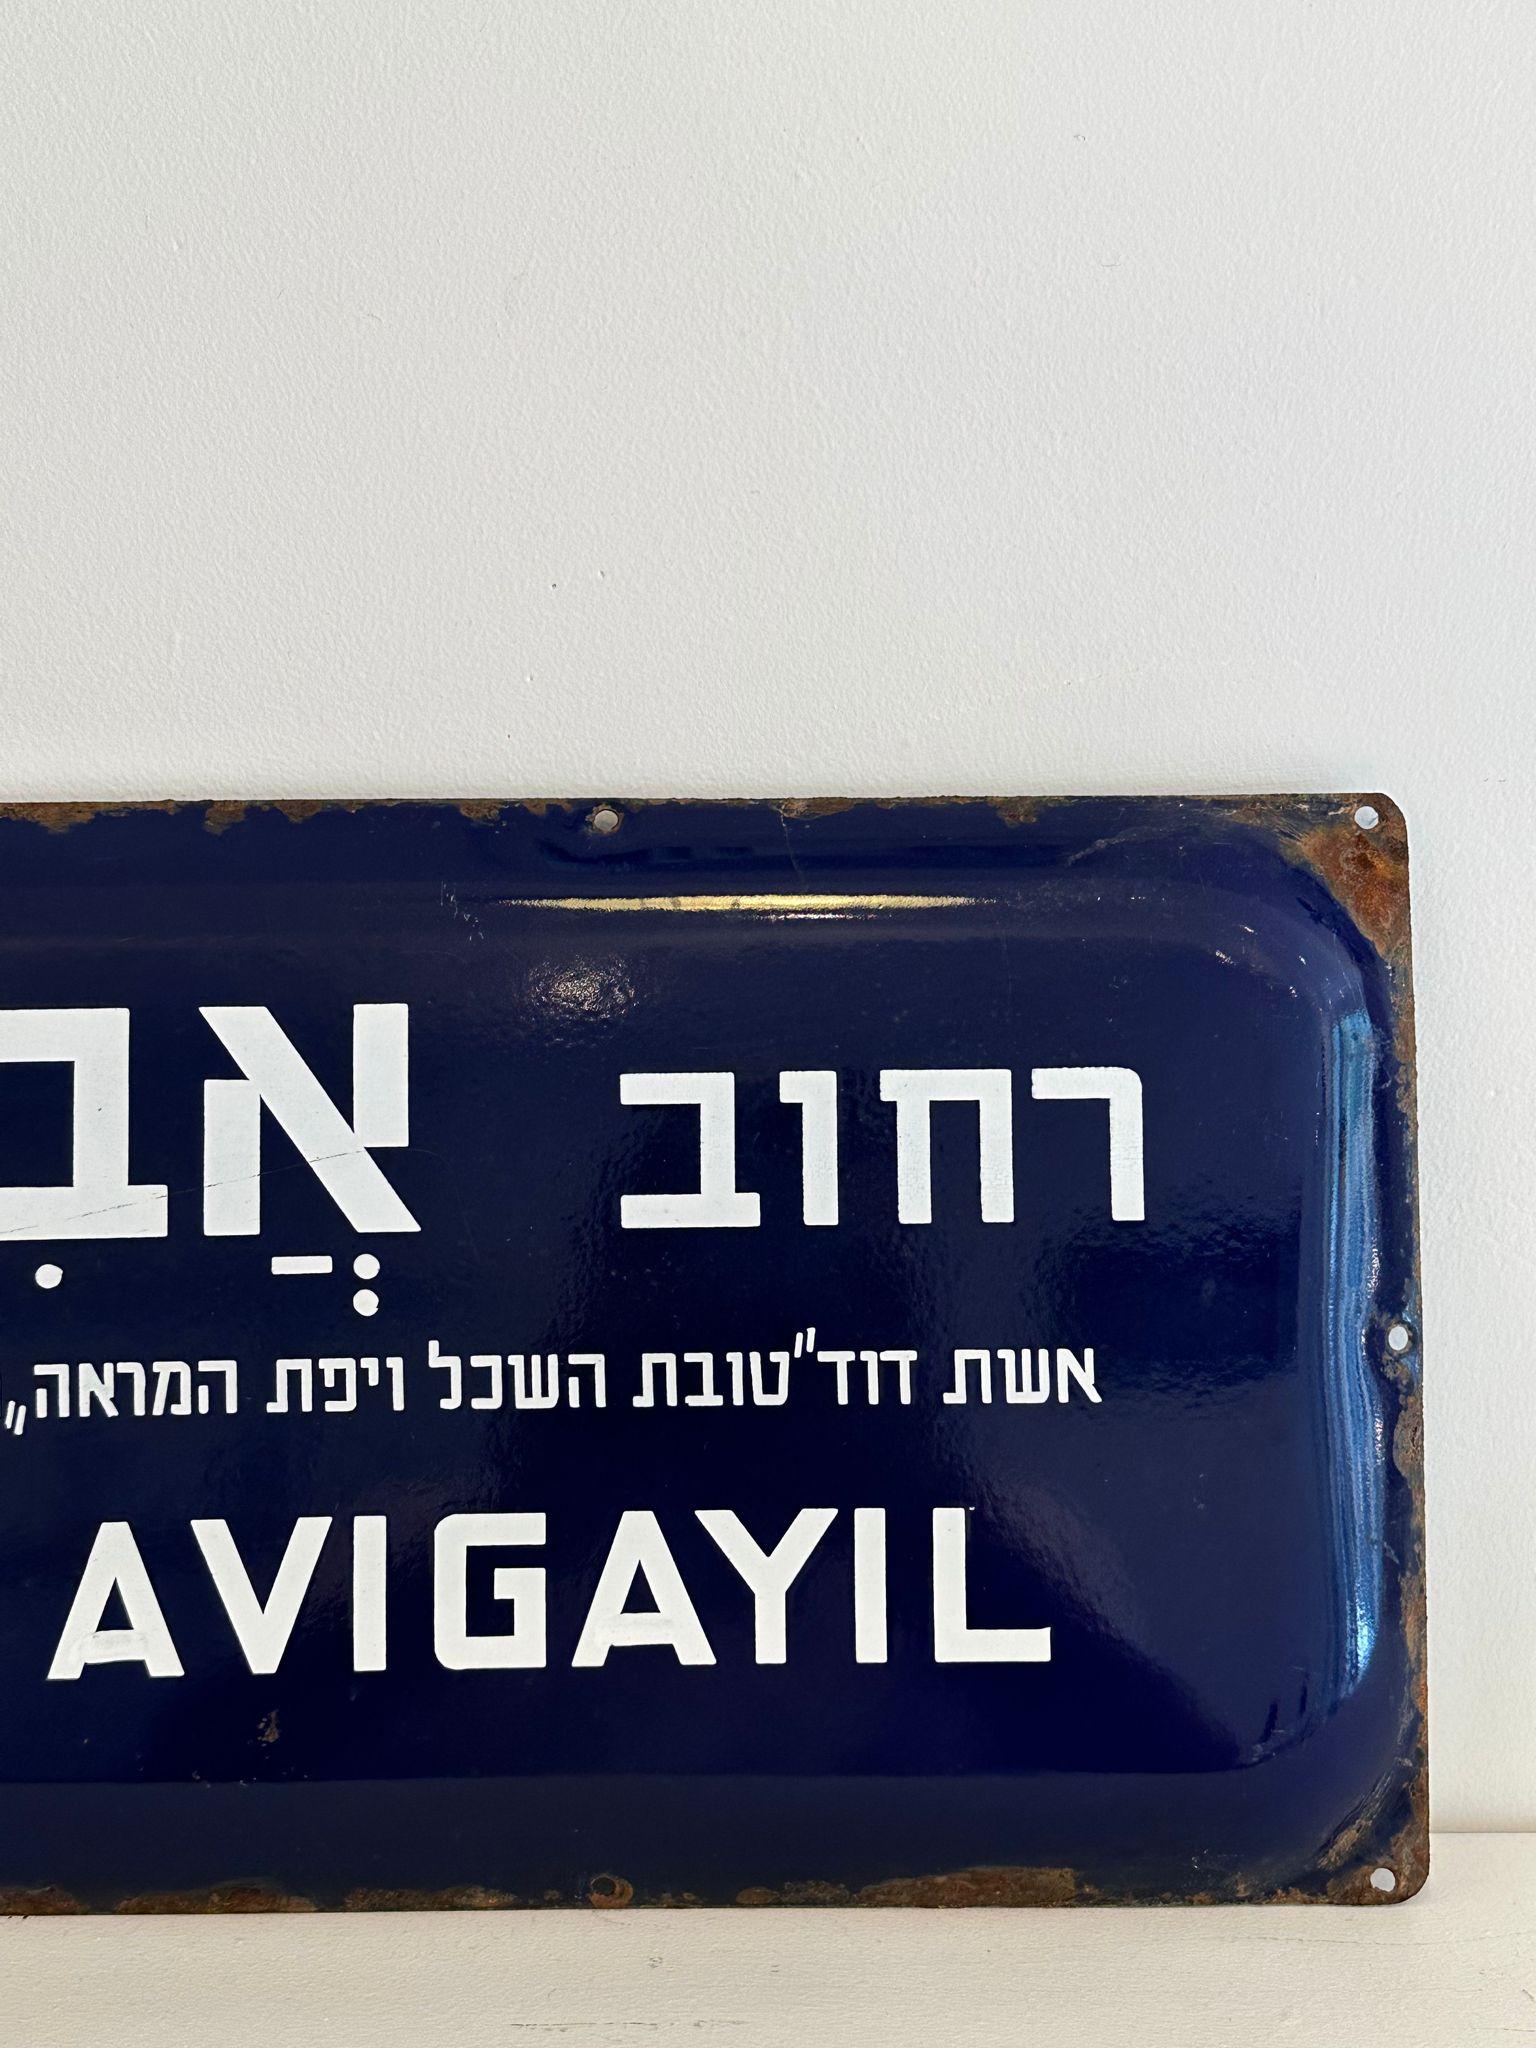 Mitte des 20. Jahrhunderts handgefertigtes israelisches Straßenschild. Dieses aus Emaille und Eisen gefertigte Straßenschild wurde kurz nach der Gründung des Staates Israel im Jahr 1948 geschaffen. Das Zeichen ist in blitzweißen Buchstaben auf